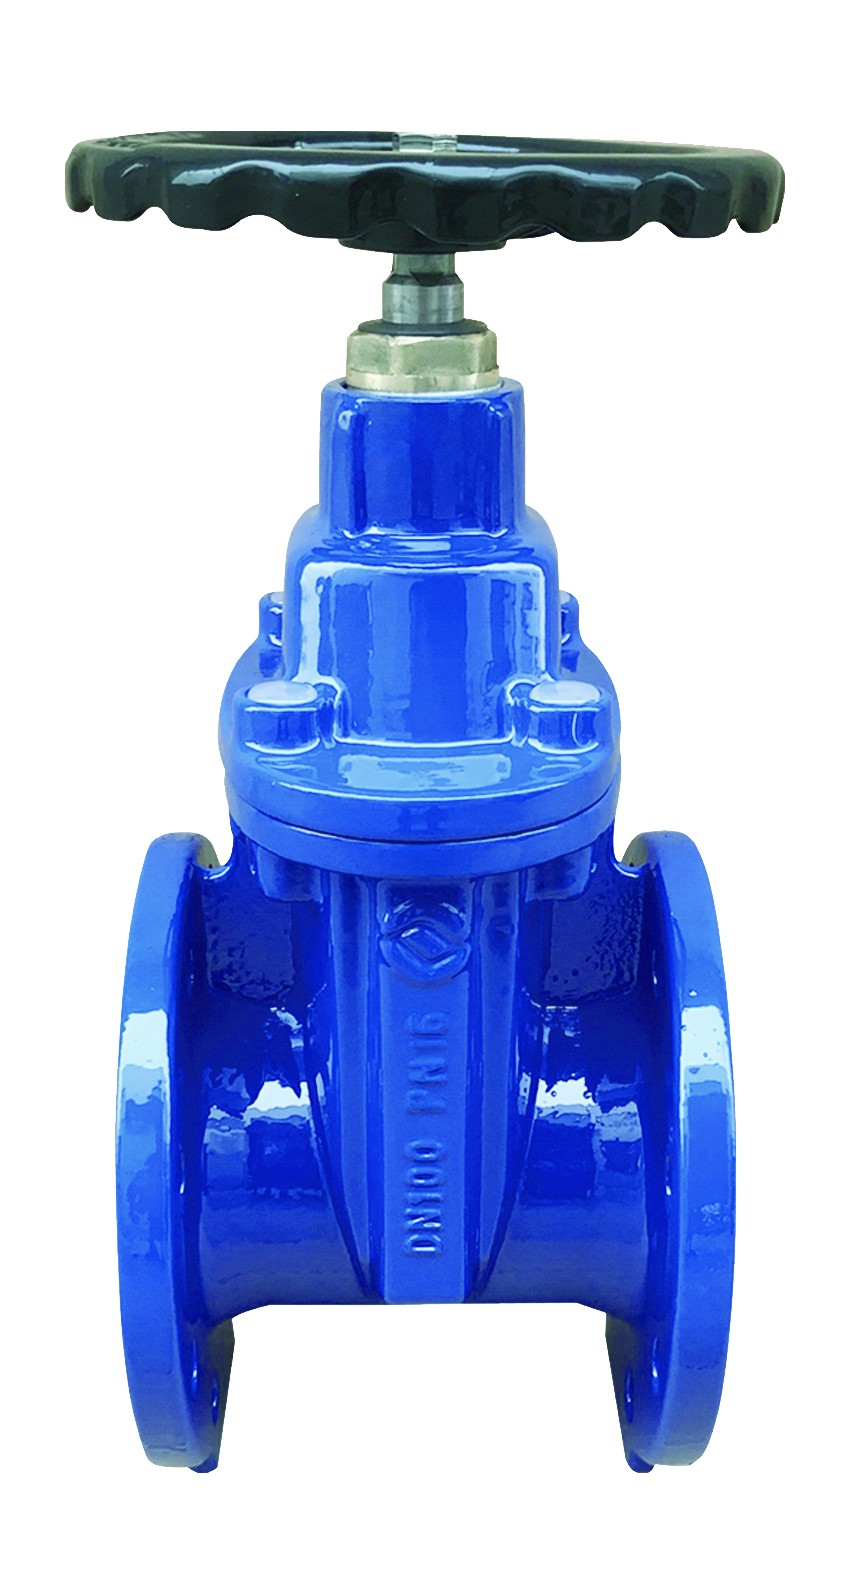 Rexroth M-SR8KE check valve